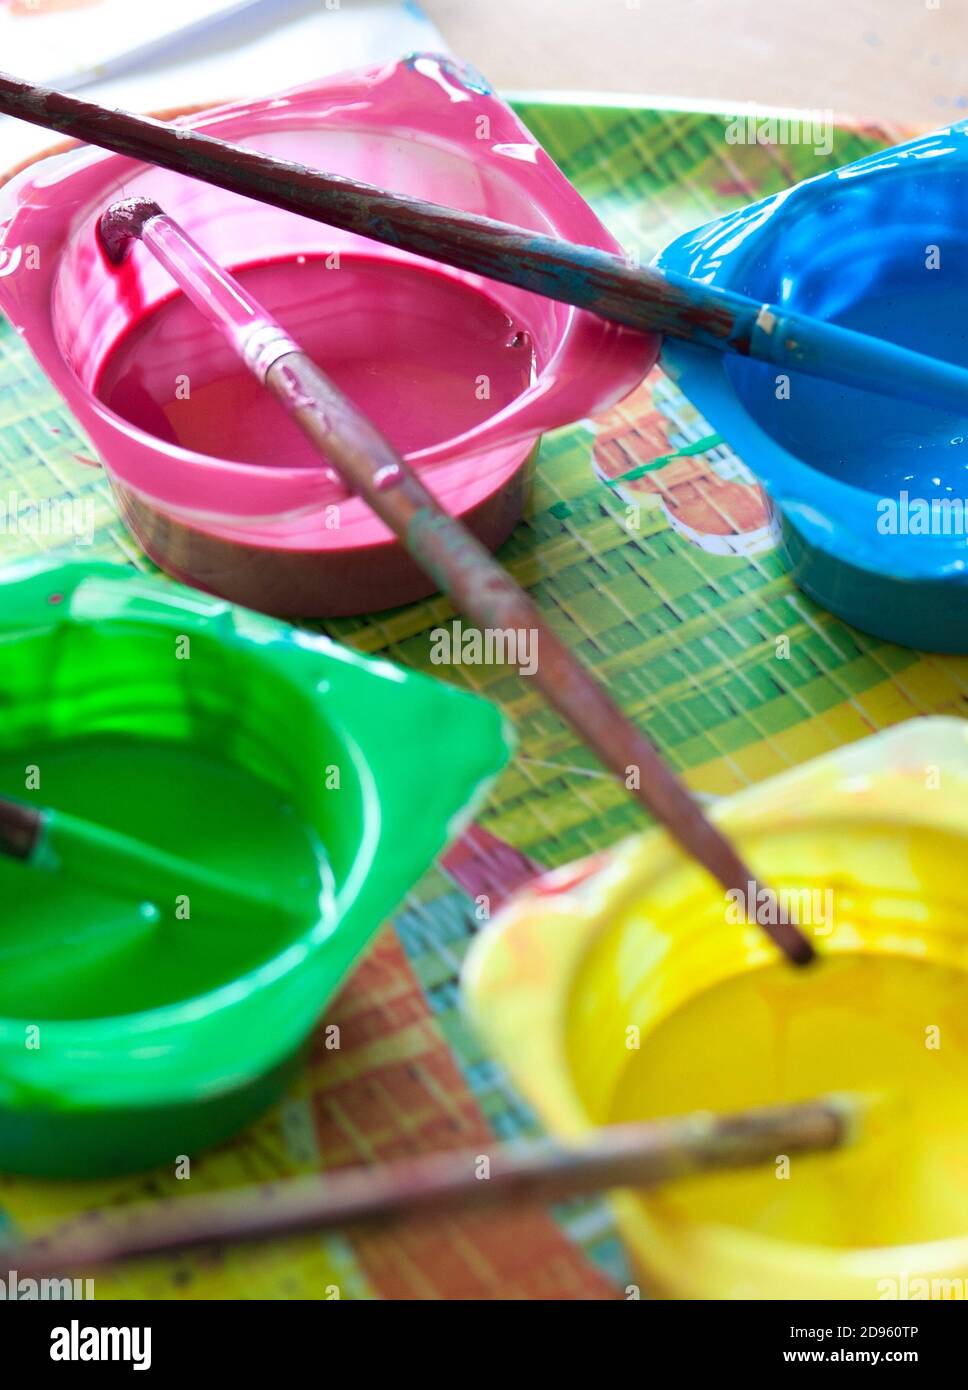 Lavable Tempera y cepillos de pintura redondeados. Tazas de yogur reutilizadas como envases de pintura. Foto de stock